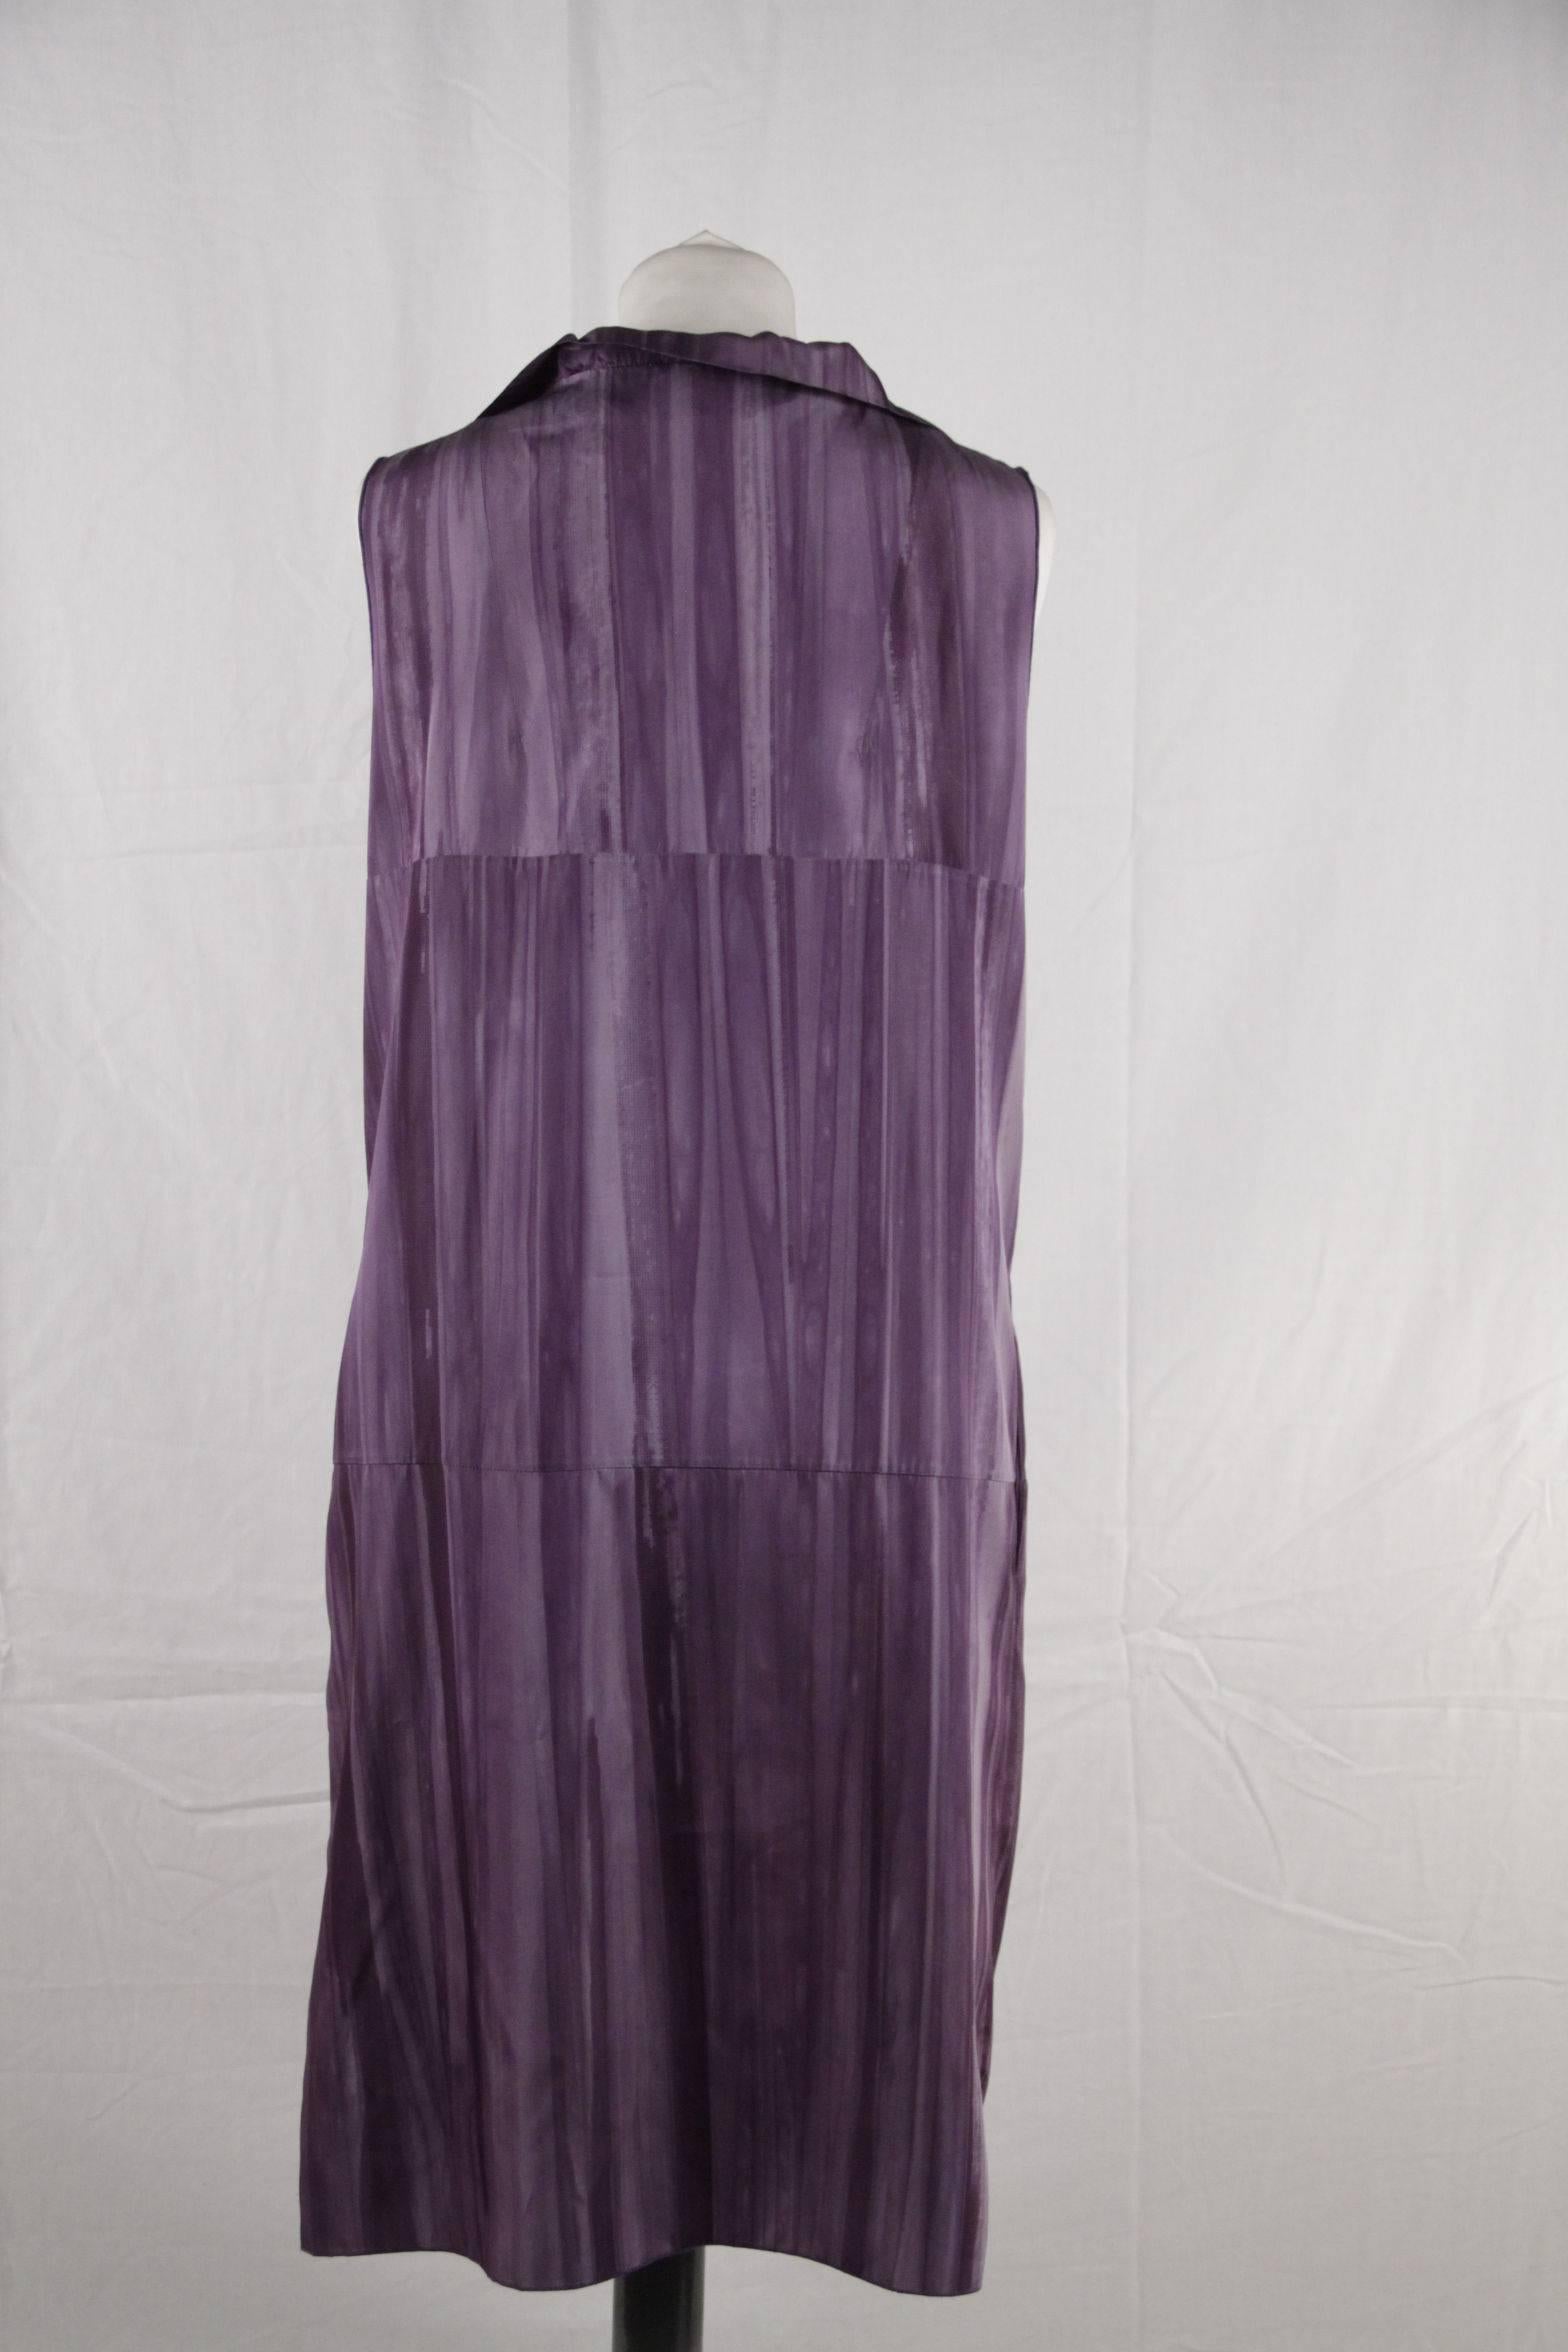 silky purple dress